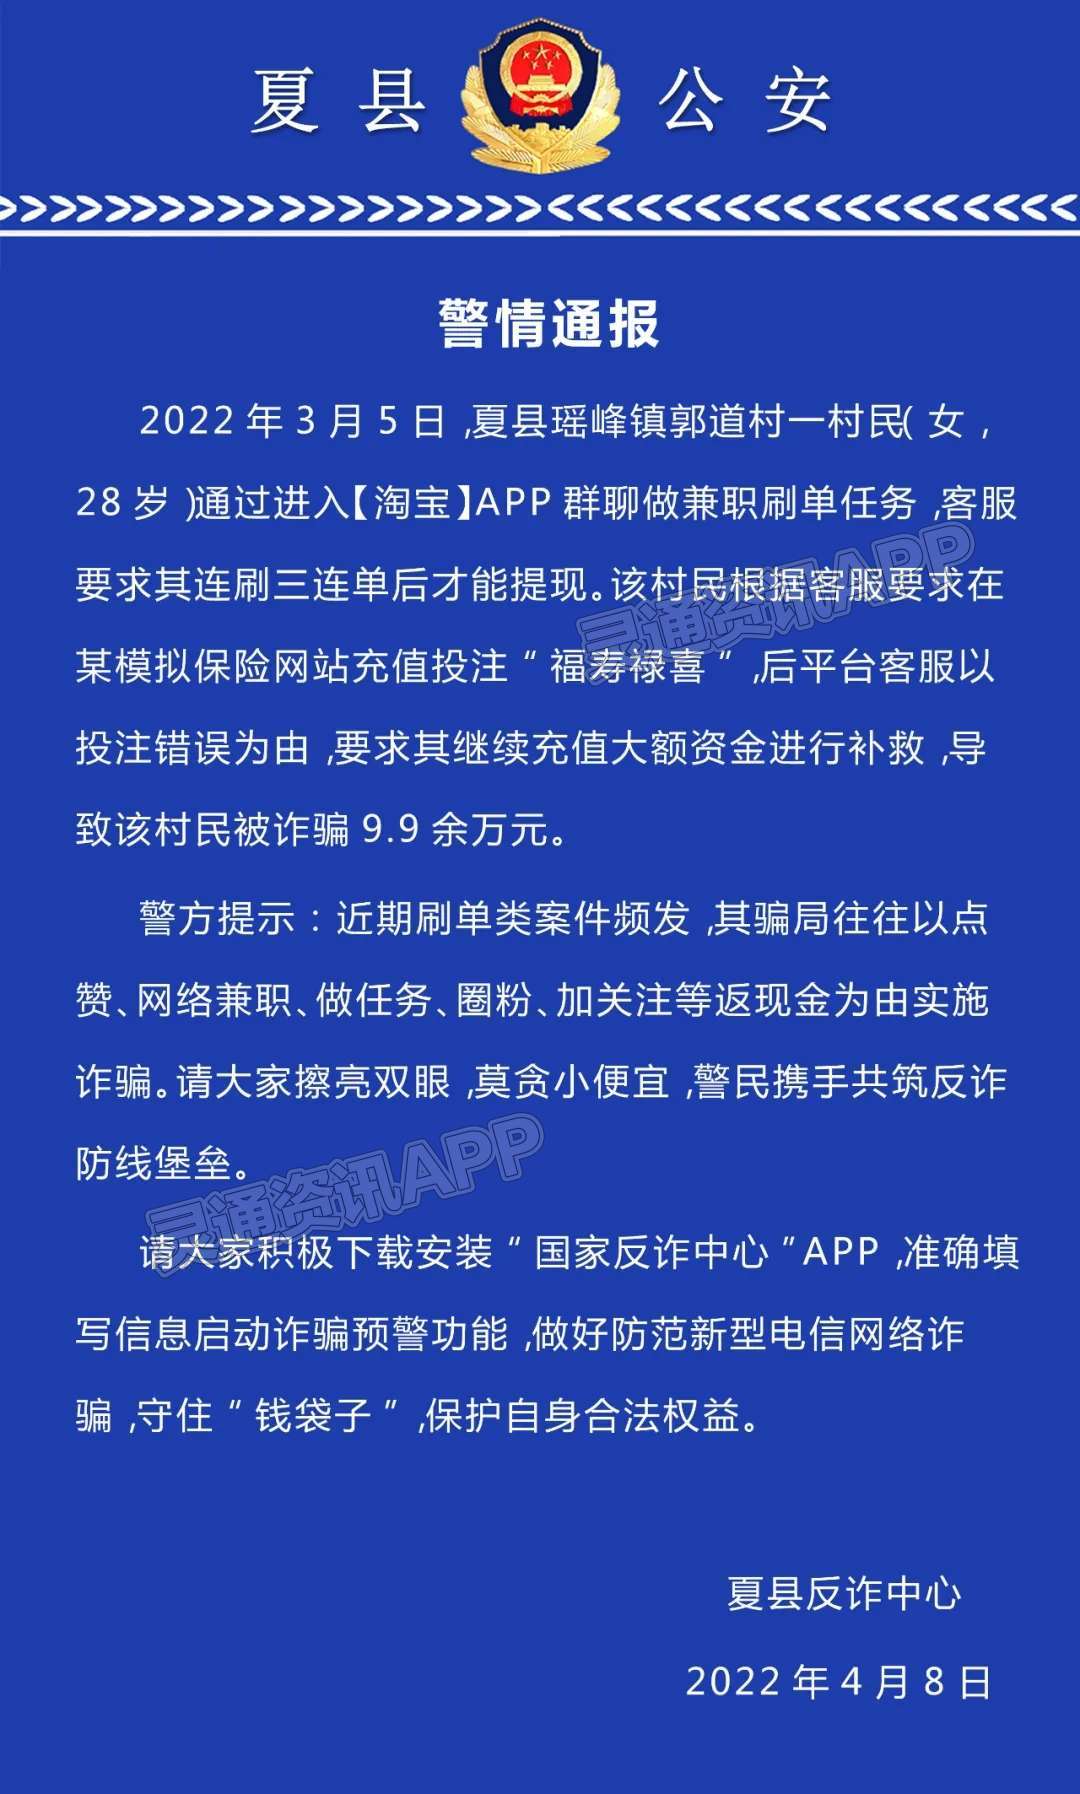 夏县一女子刷单被骗9.9万余元‘hq环球体育app官方’